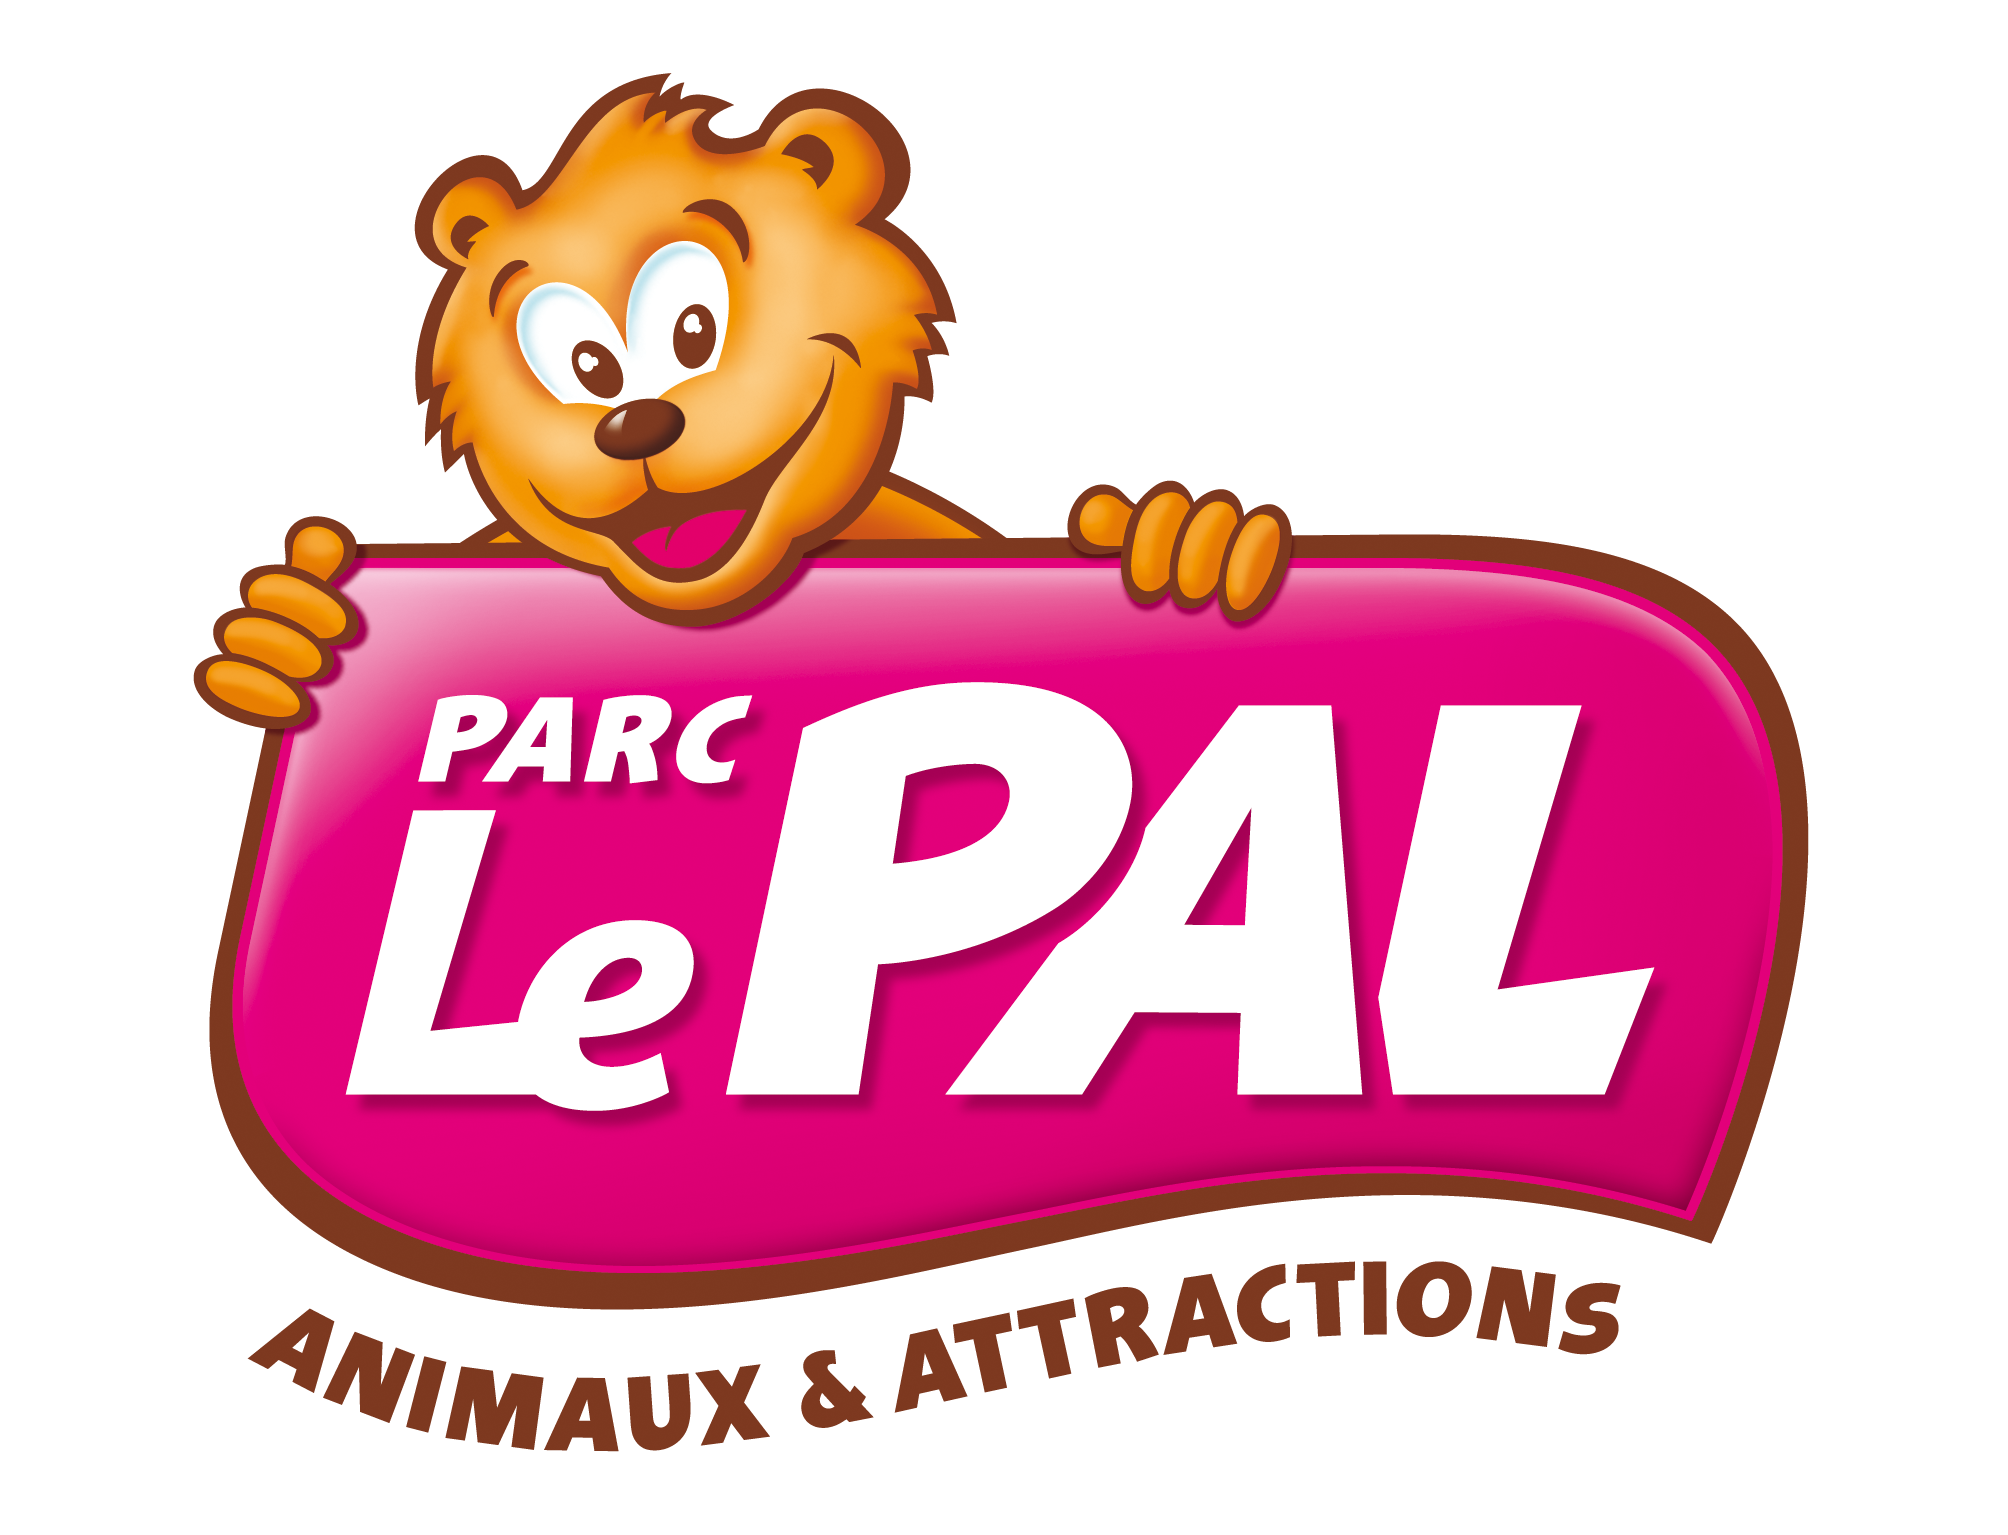 PARC LE PAL logo